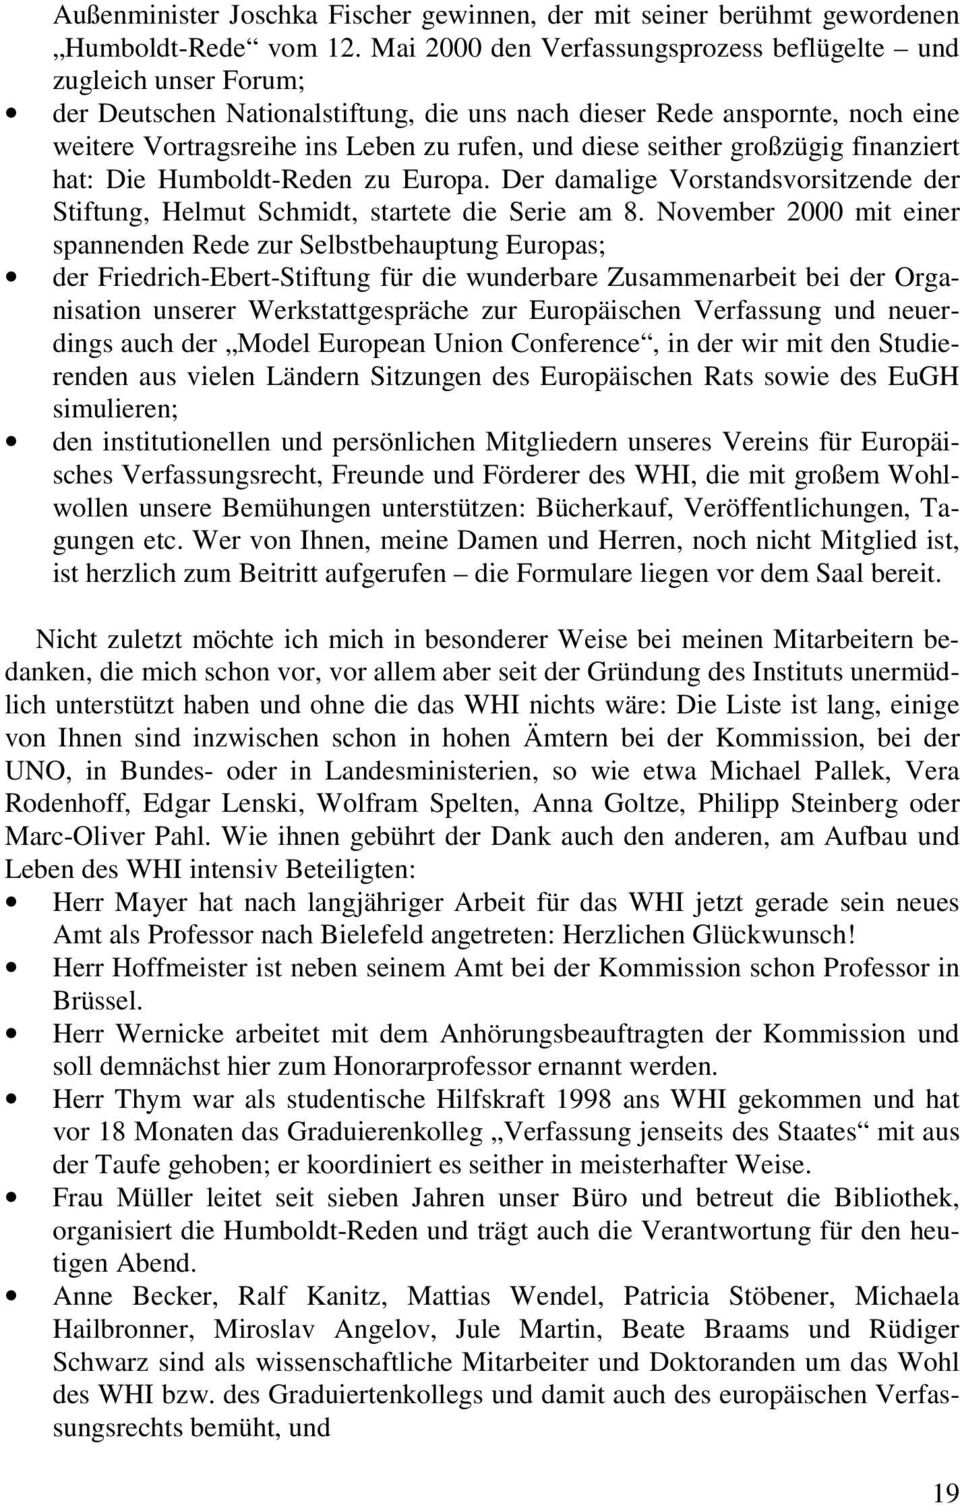 seither großzügig finanziert hat: Die Humboldt-Reden zu Europa. Der damalige Vorstandsvorsitzende der Stiftung, Helmut Schmidt, startete die Serie am 8.